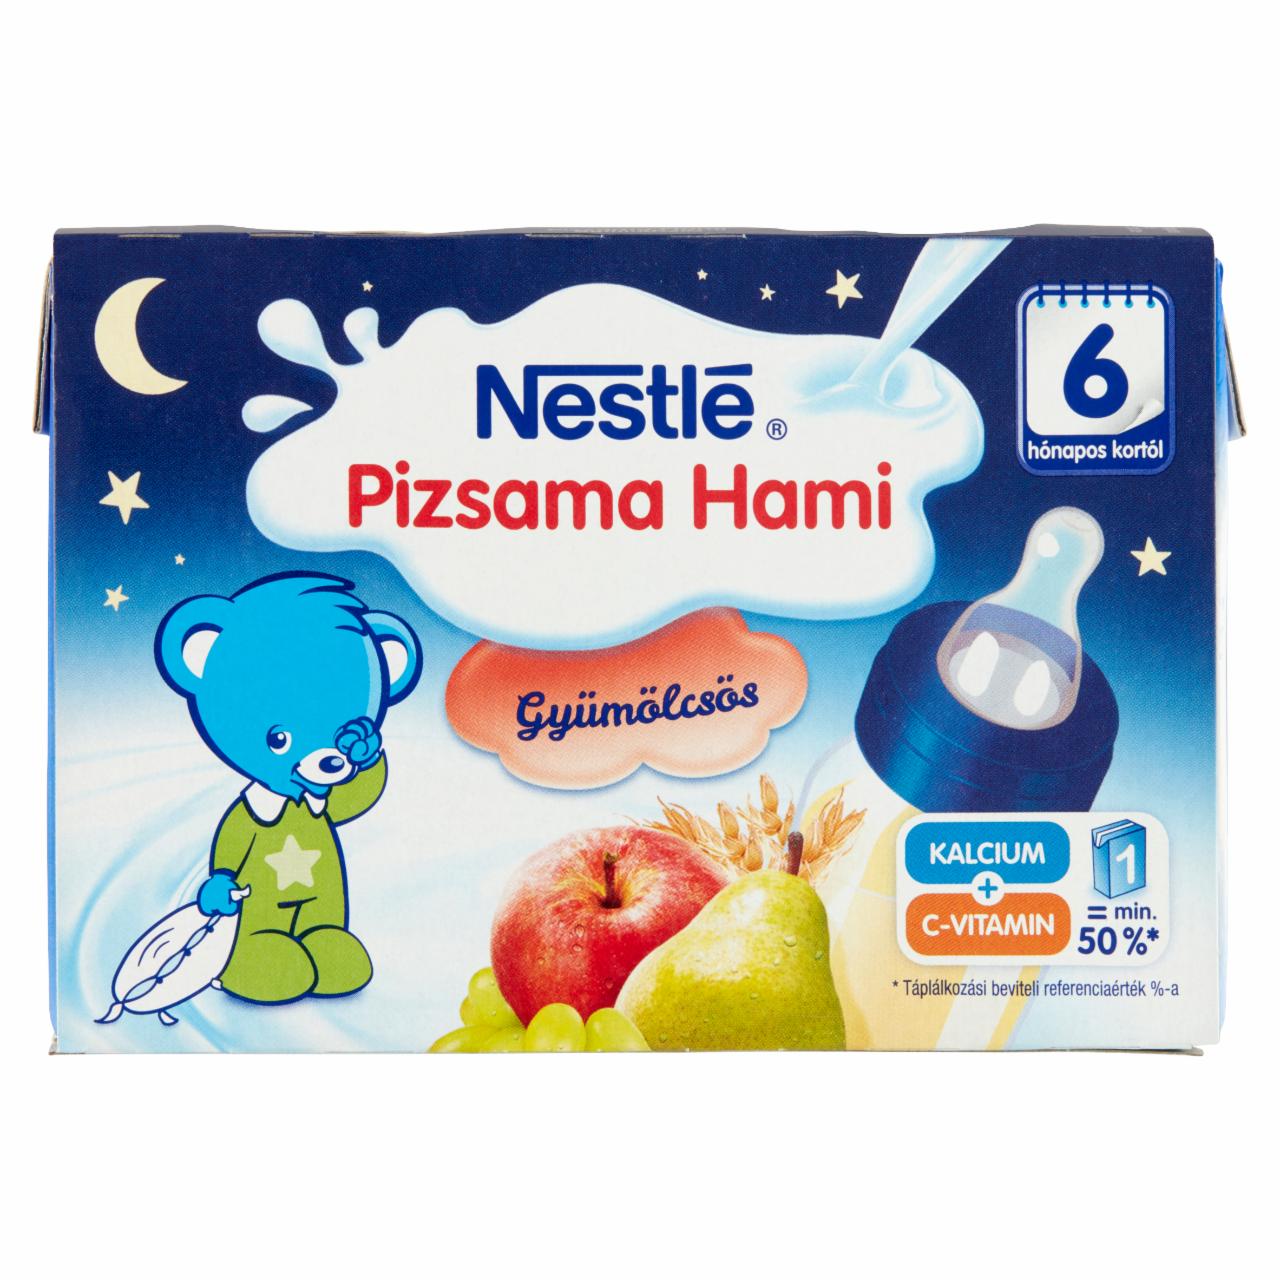 Képek - Nestlé Pizsama Hami UHT gyümölcsös folyékony gabonás bébiétel 6 hónapos kortól 2 x 200 ml (400 ml)